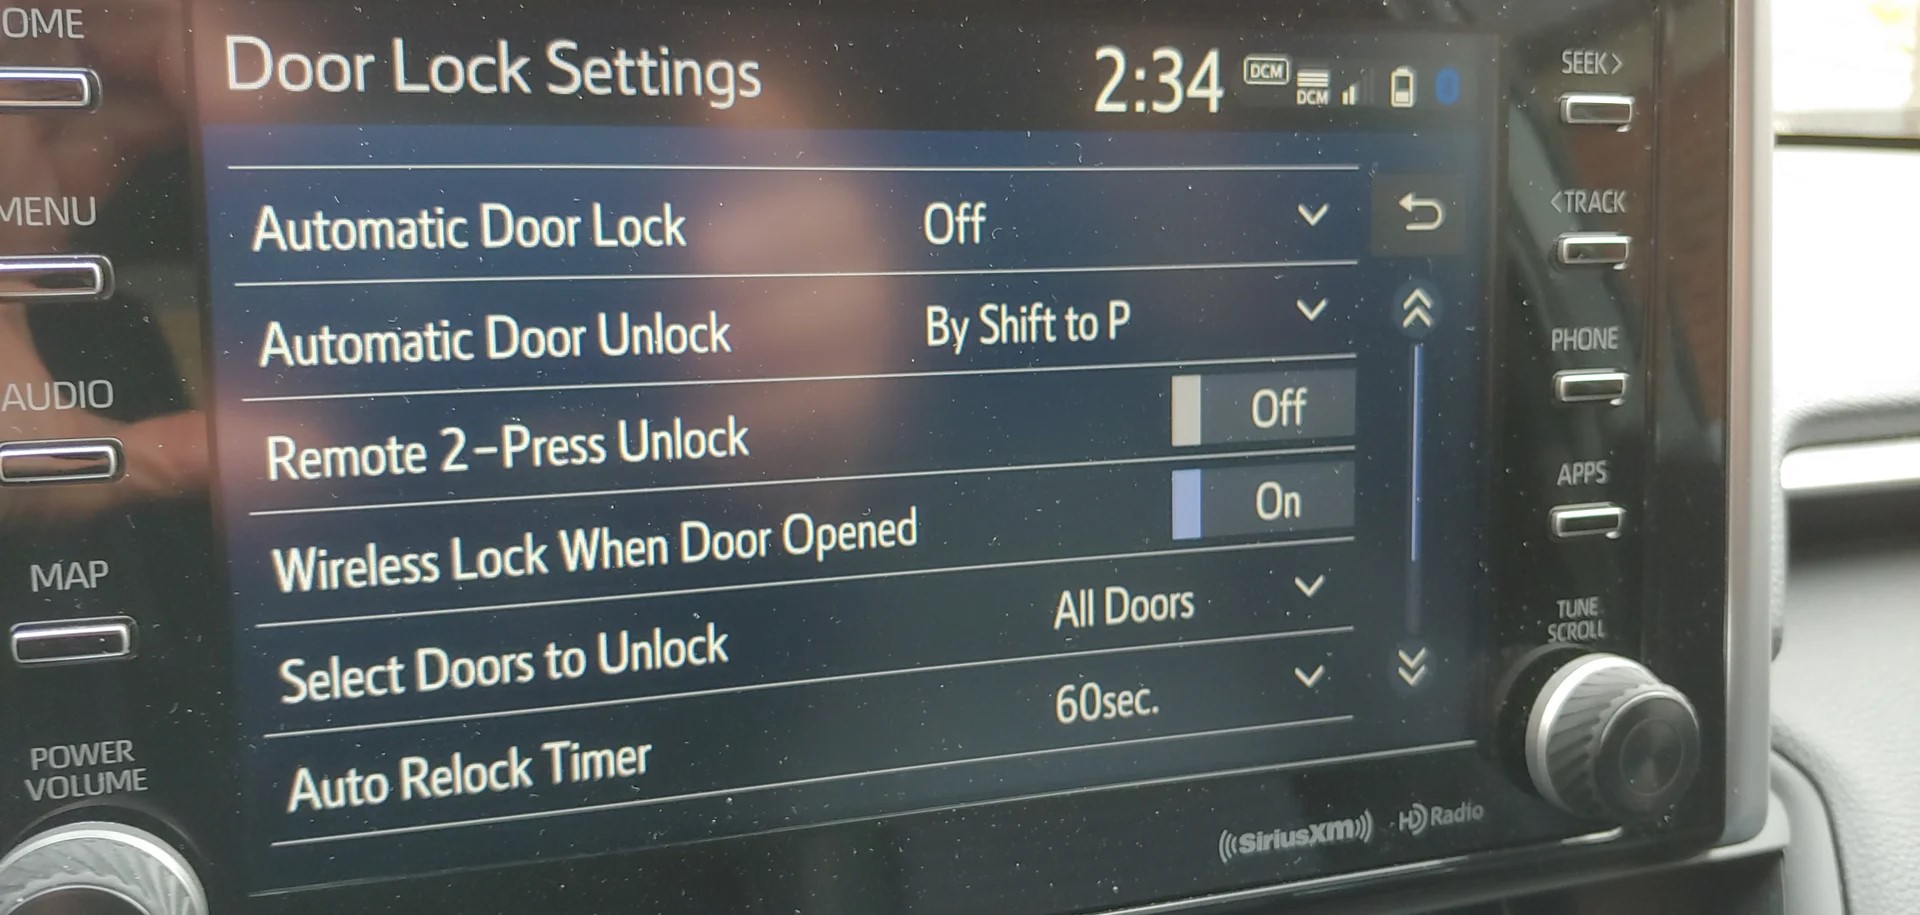 What Is Wireless Lock When Door Opened